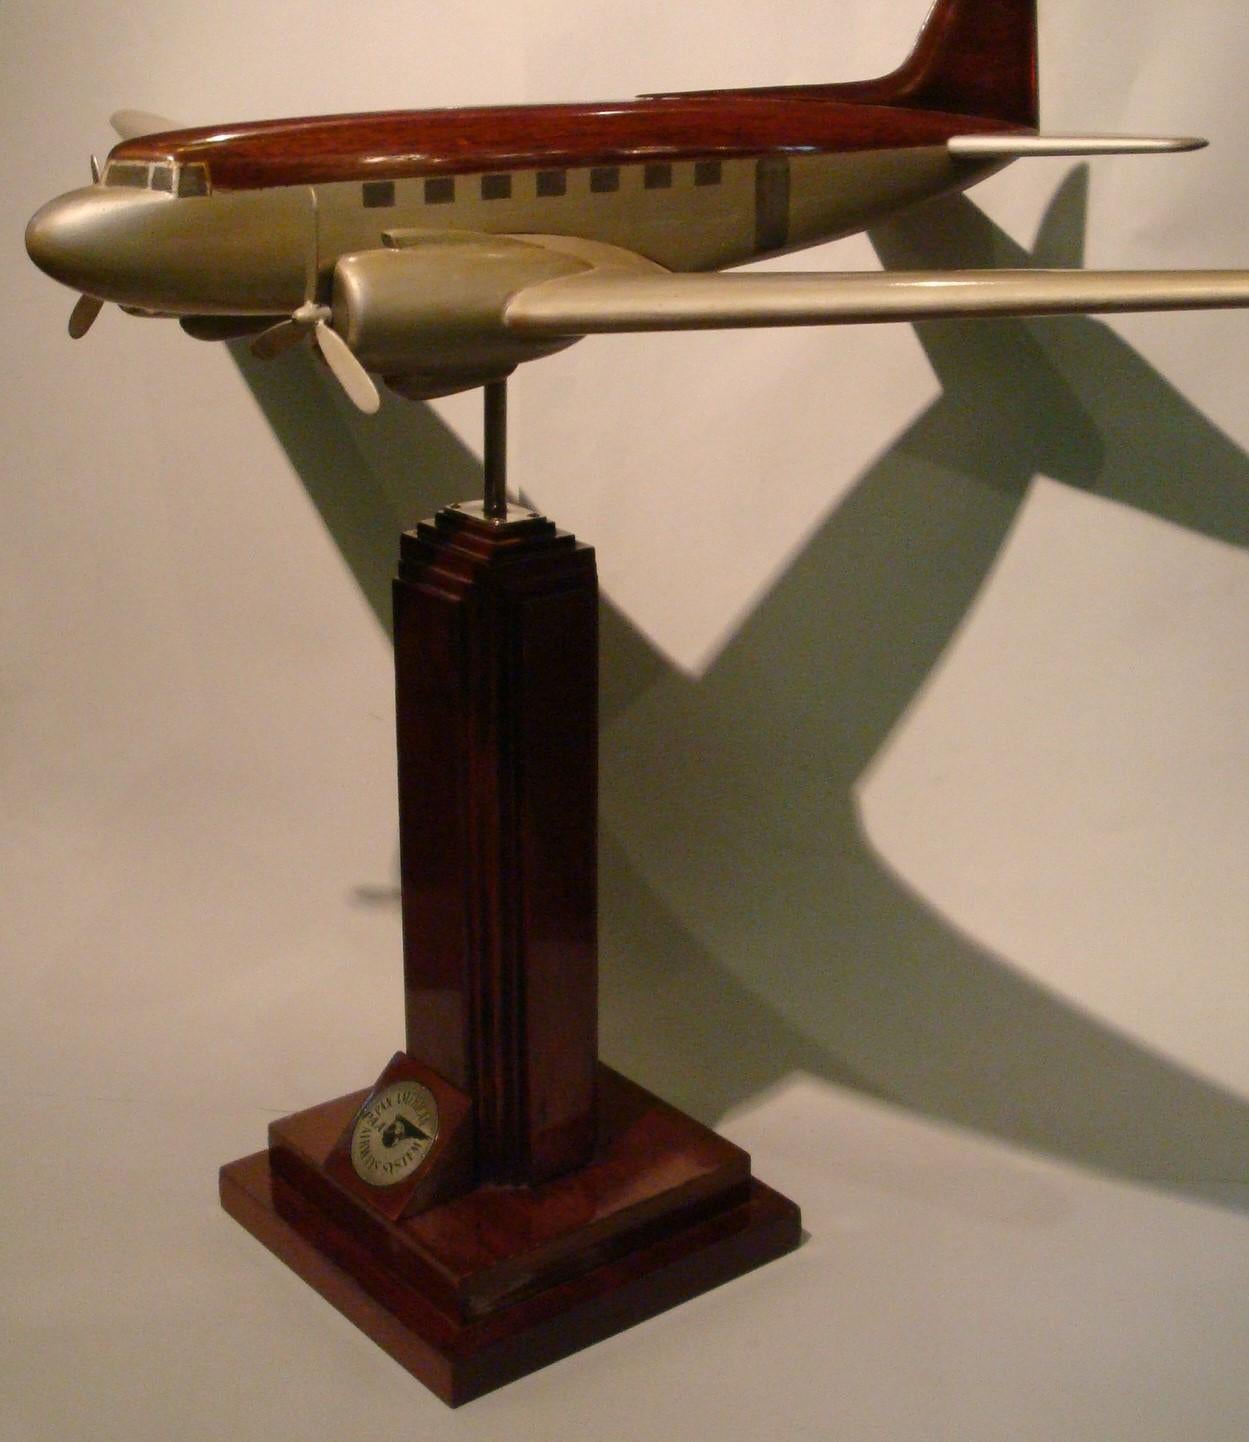 Maquette de bureau Art déco / midcentury DC3.
Modèle d'avion Pan-Am en bois.
C'était dans un bureau de l'entreprise en Amérique du Sud.
Très bon état de restauration. Légère usure due à l'âge.

Histoire
C'est à cette date, en 1939, que Pan